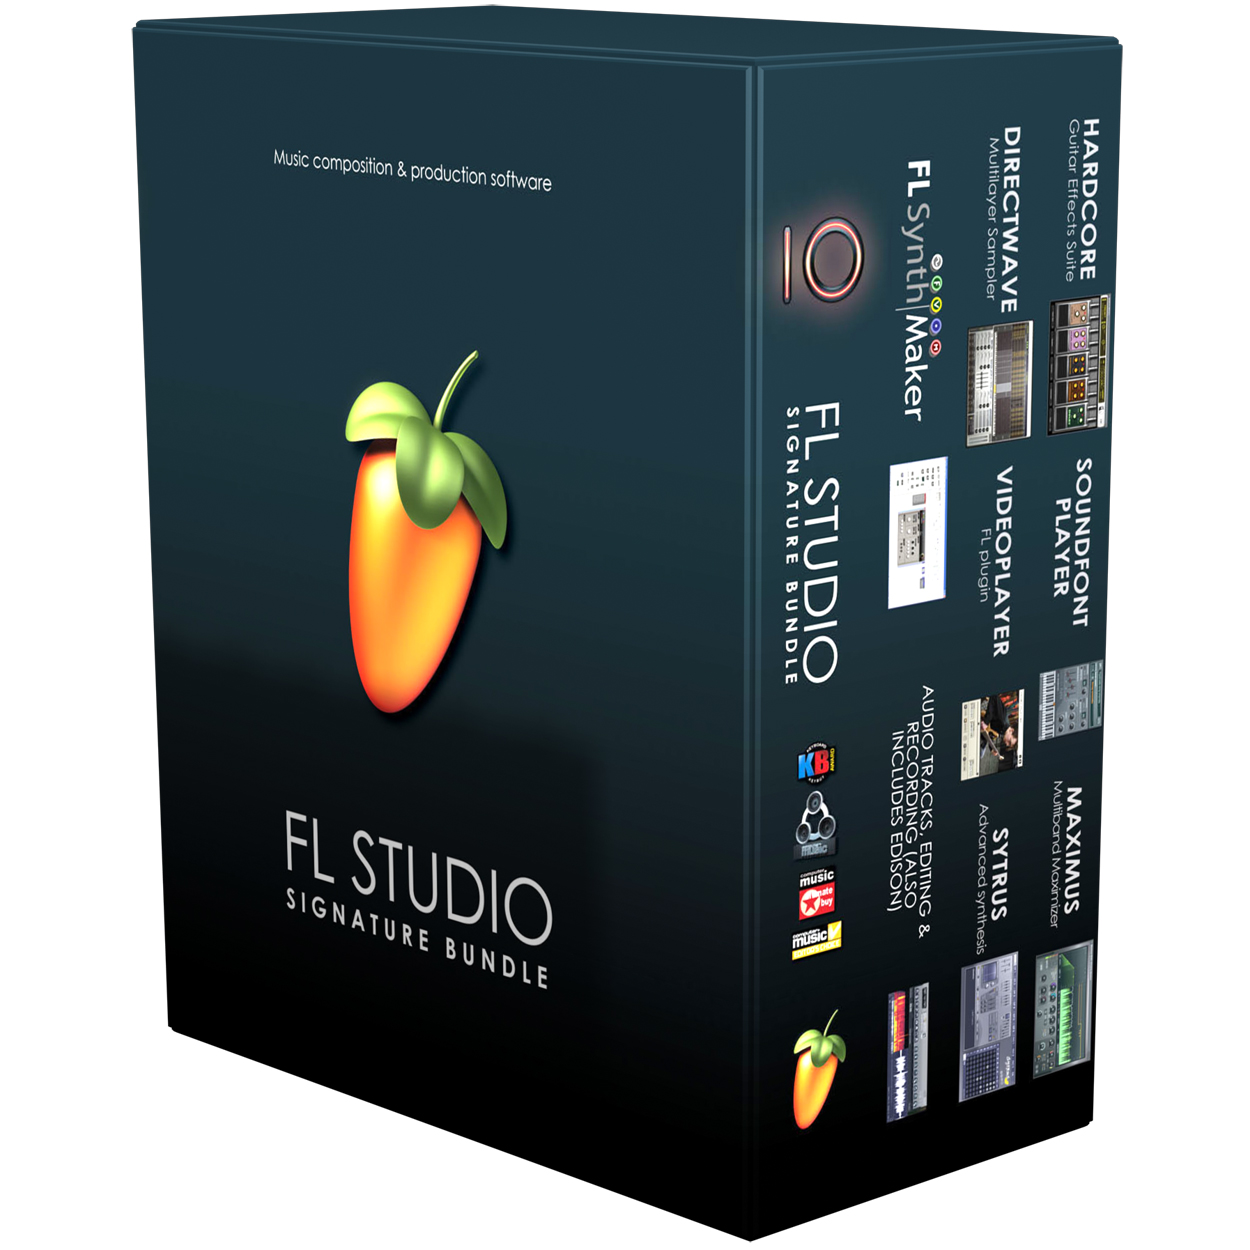 fl studio signature bundle features